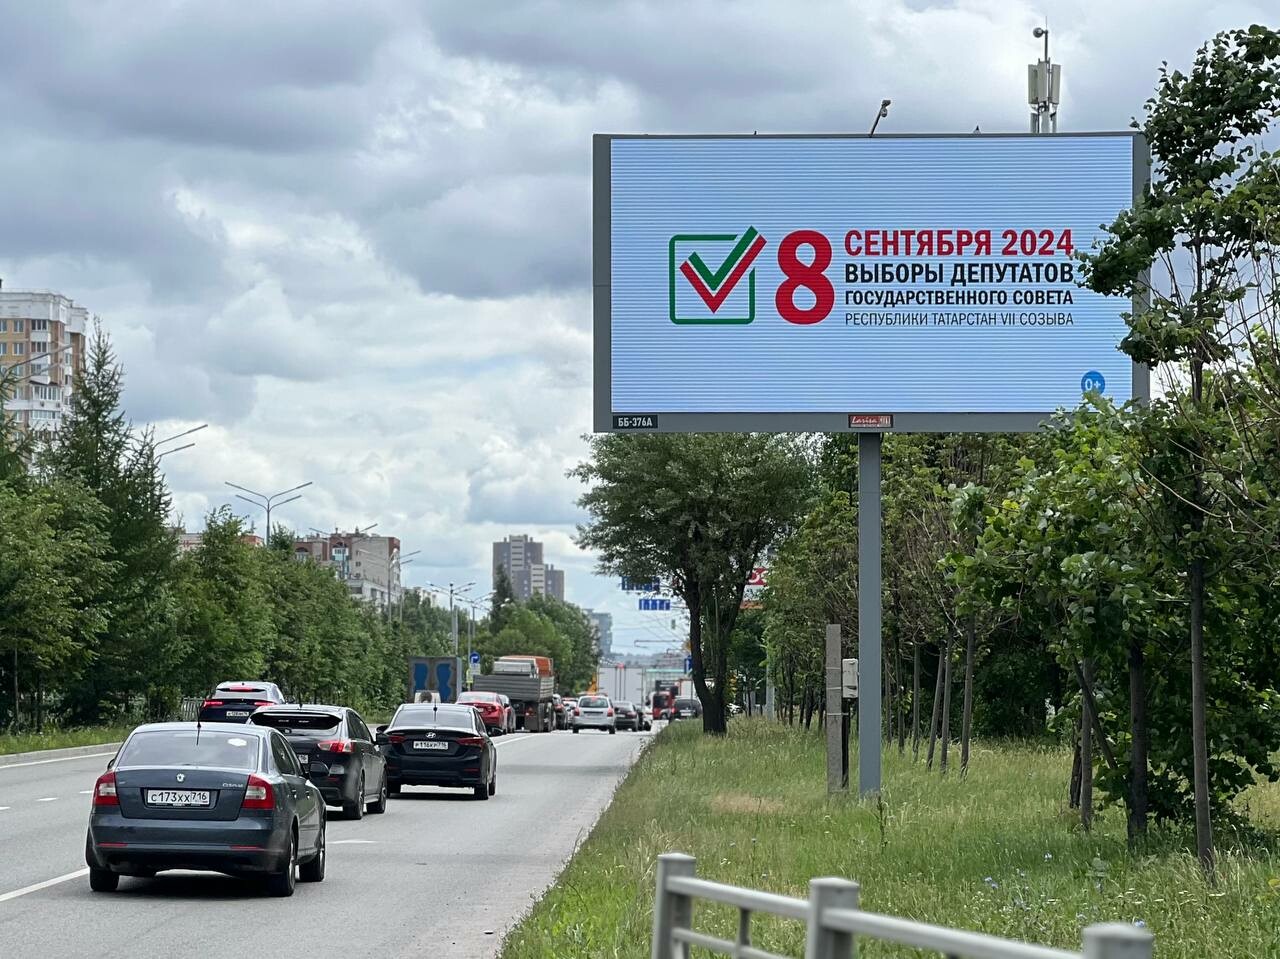 На билбордах в городах Татарстана появилась информация о выборах в Госсовет